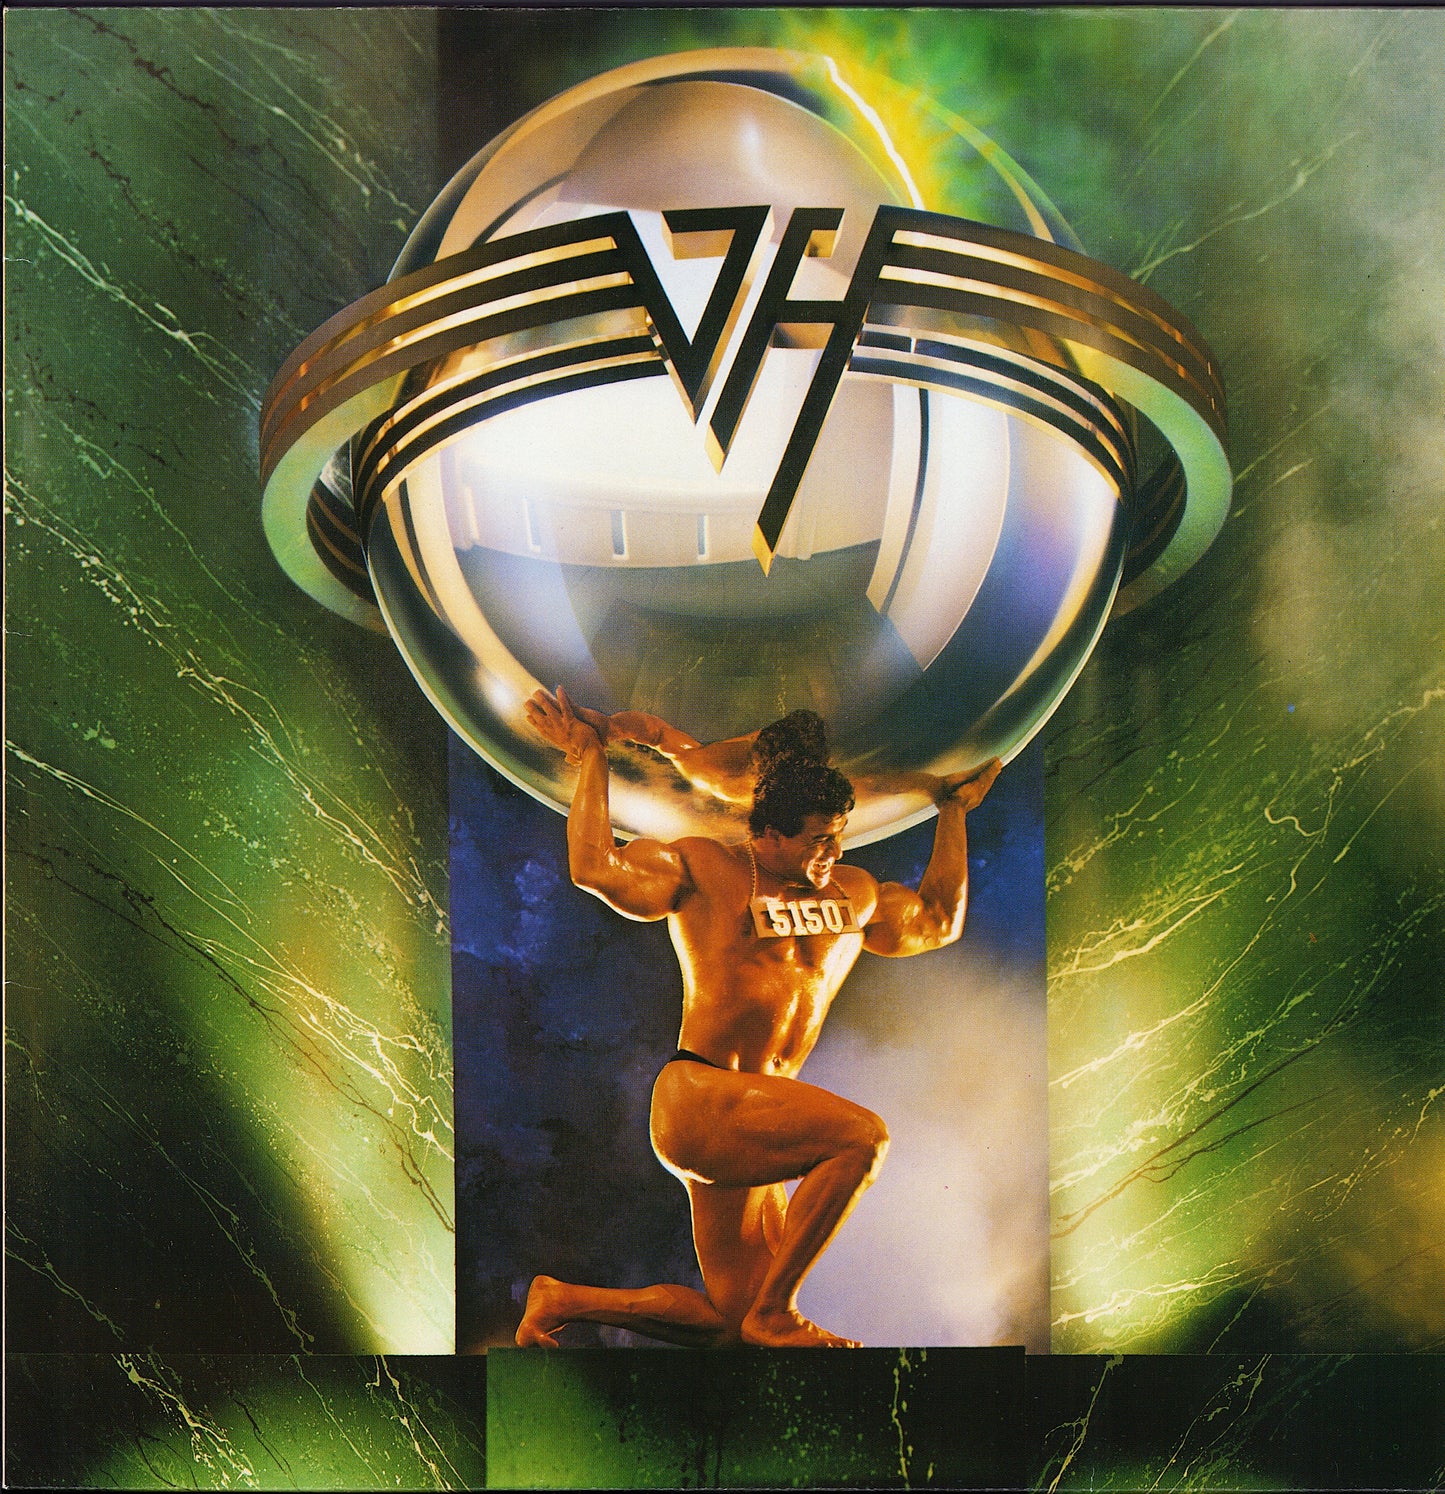 Van Halen ‎- 5150 Vinyl LP